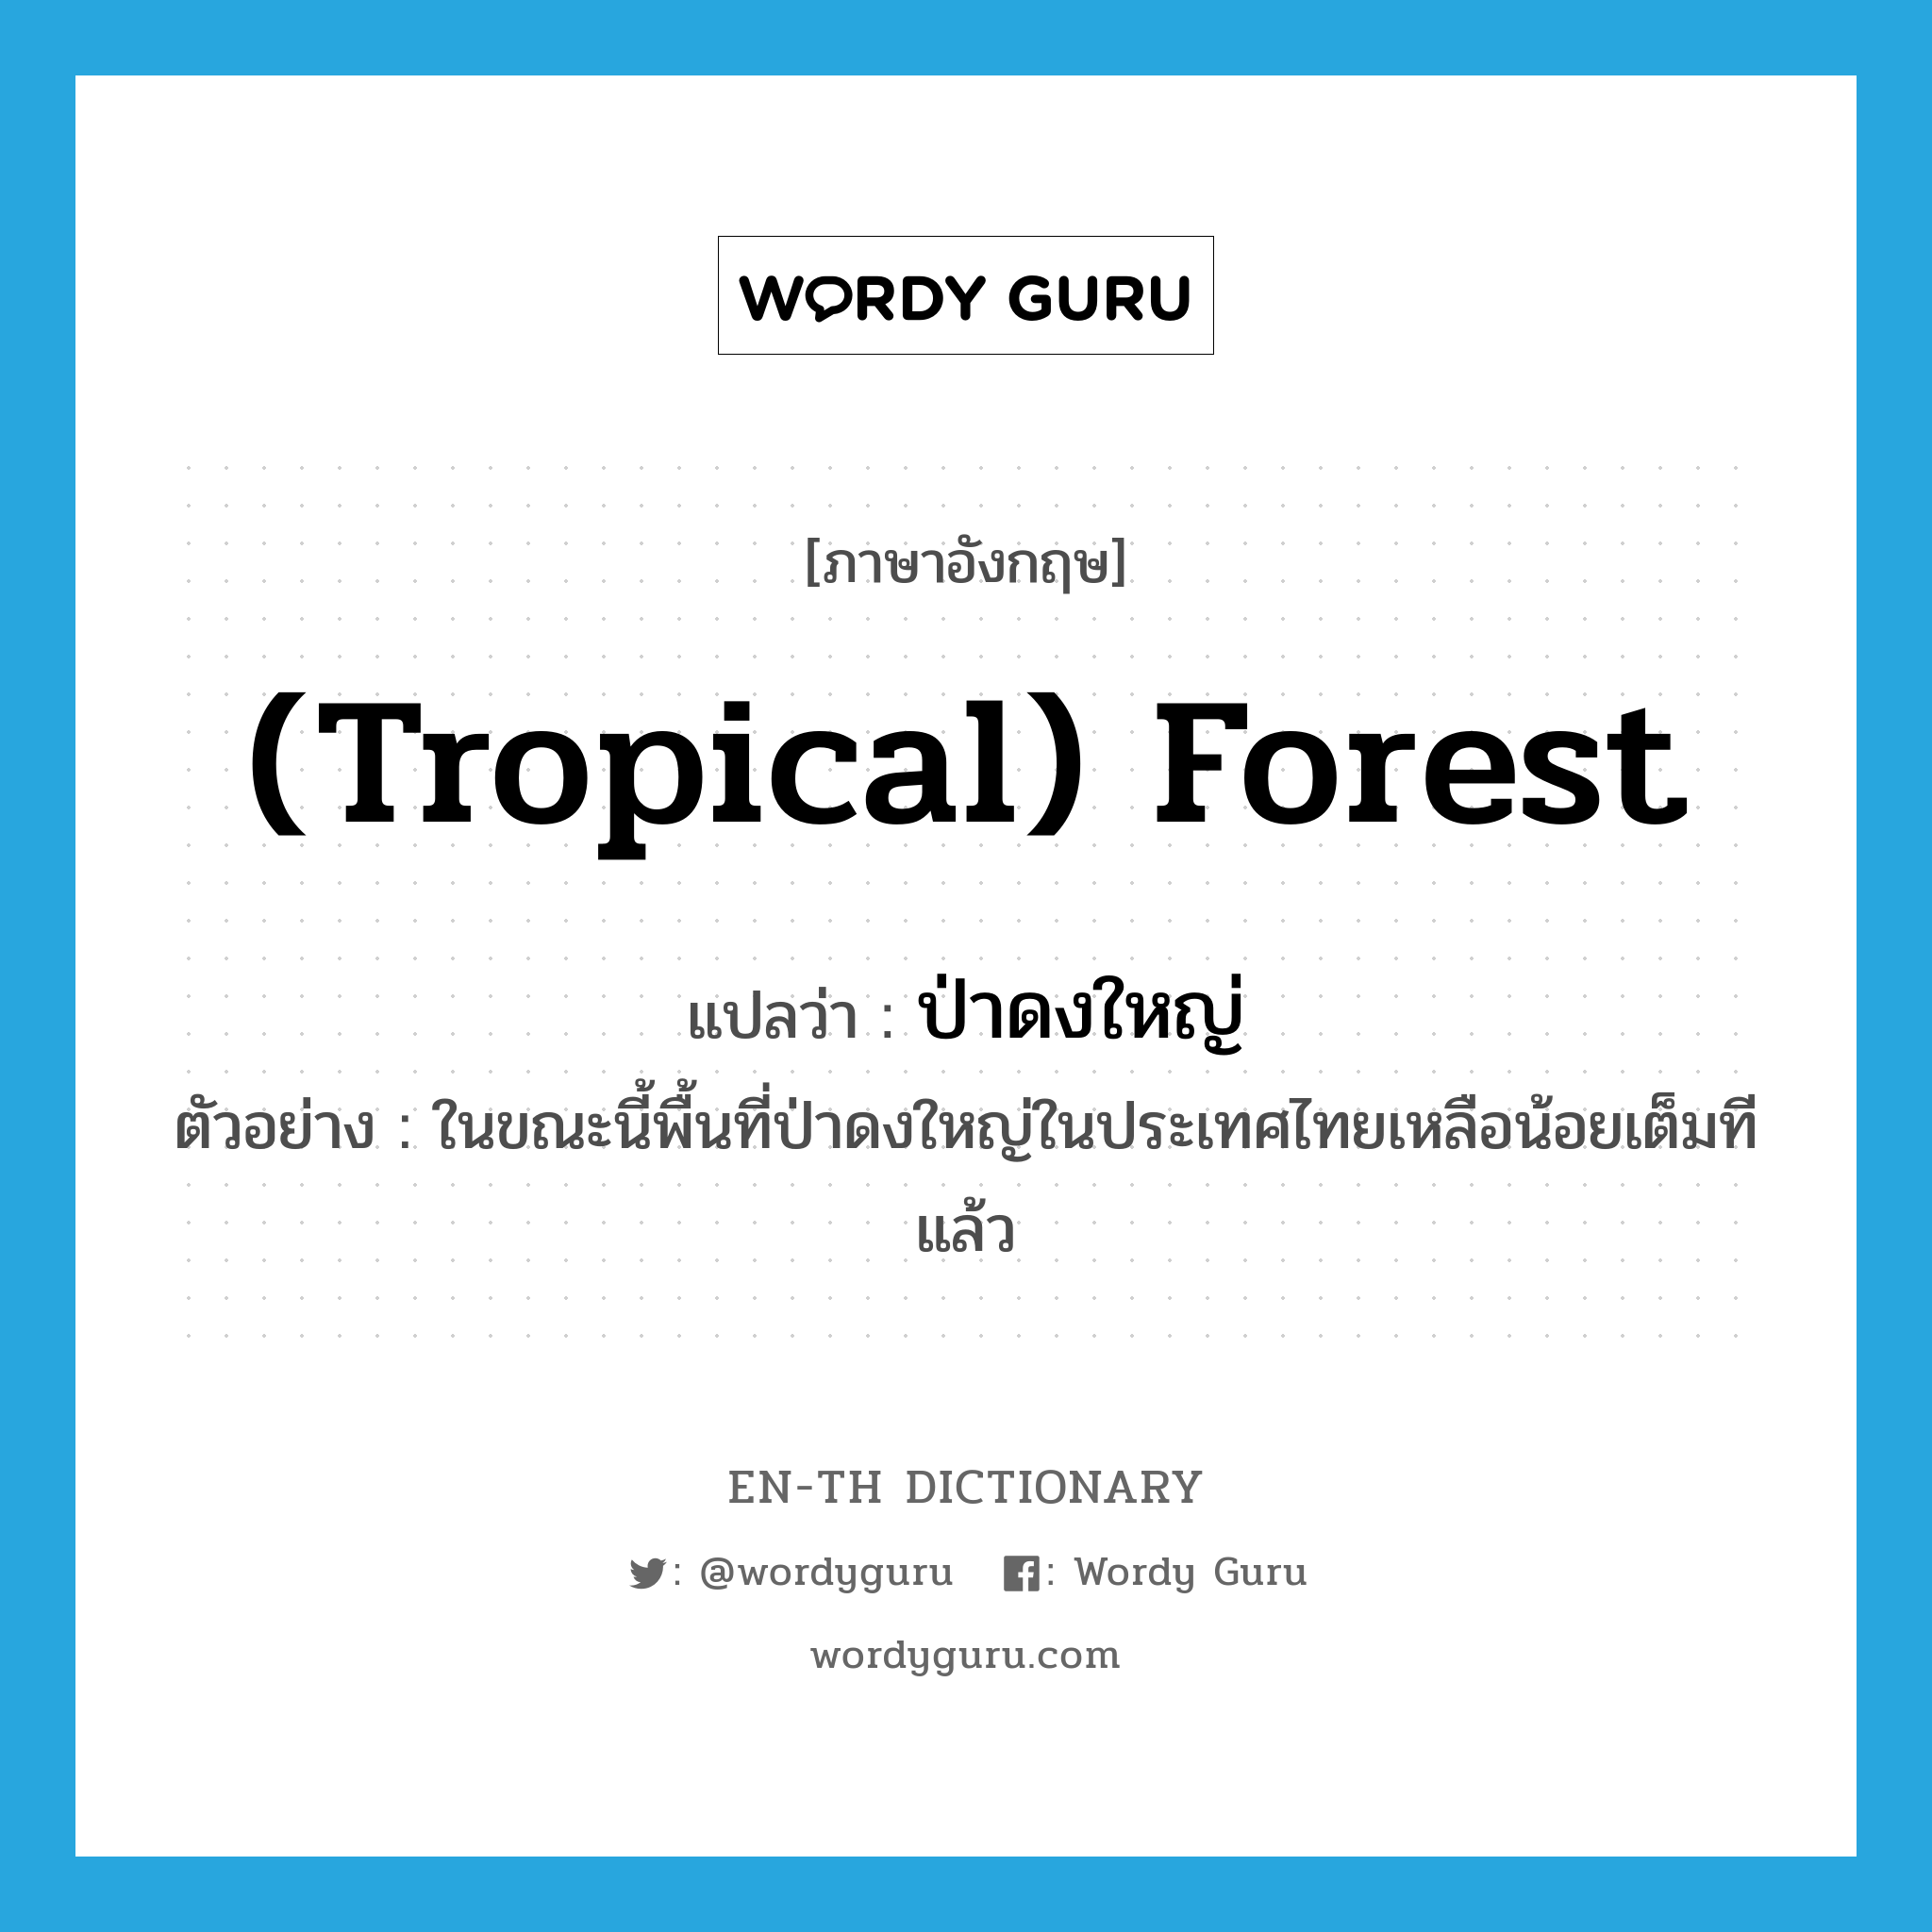 ป่าดงใหญ่ ภาษาอังกฤษ?, คำศัพท์ภาษาอังกฤษ ป่าดงใหญ่ แปลว่า (tropical) forest ประเภท N ตัวอย่าง ในขณะนี้พื้นที่ป่าดงใหญ่ในประเทศไทยเหลือน้อยเต็มทีแล้ว หมวด N